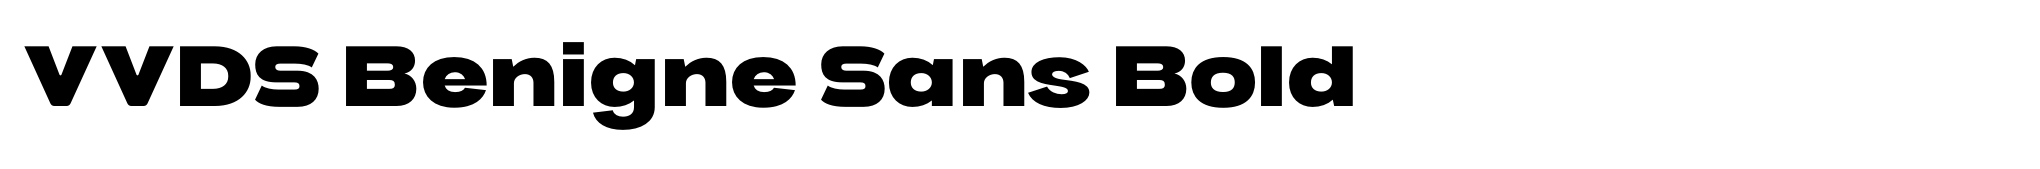 VVDS Benigne Sans Bold image